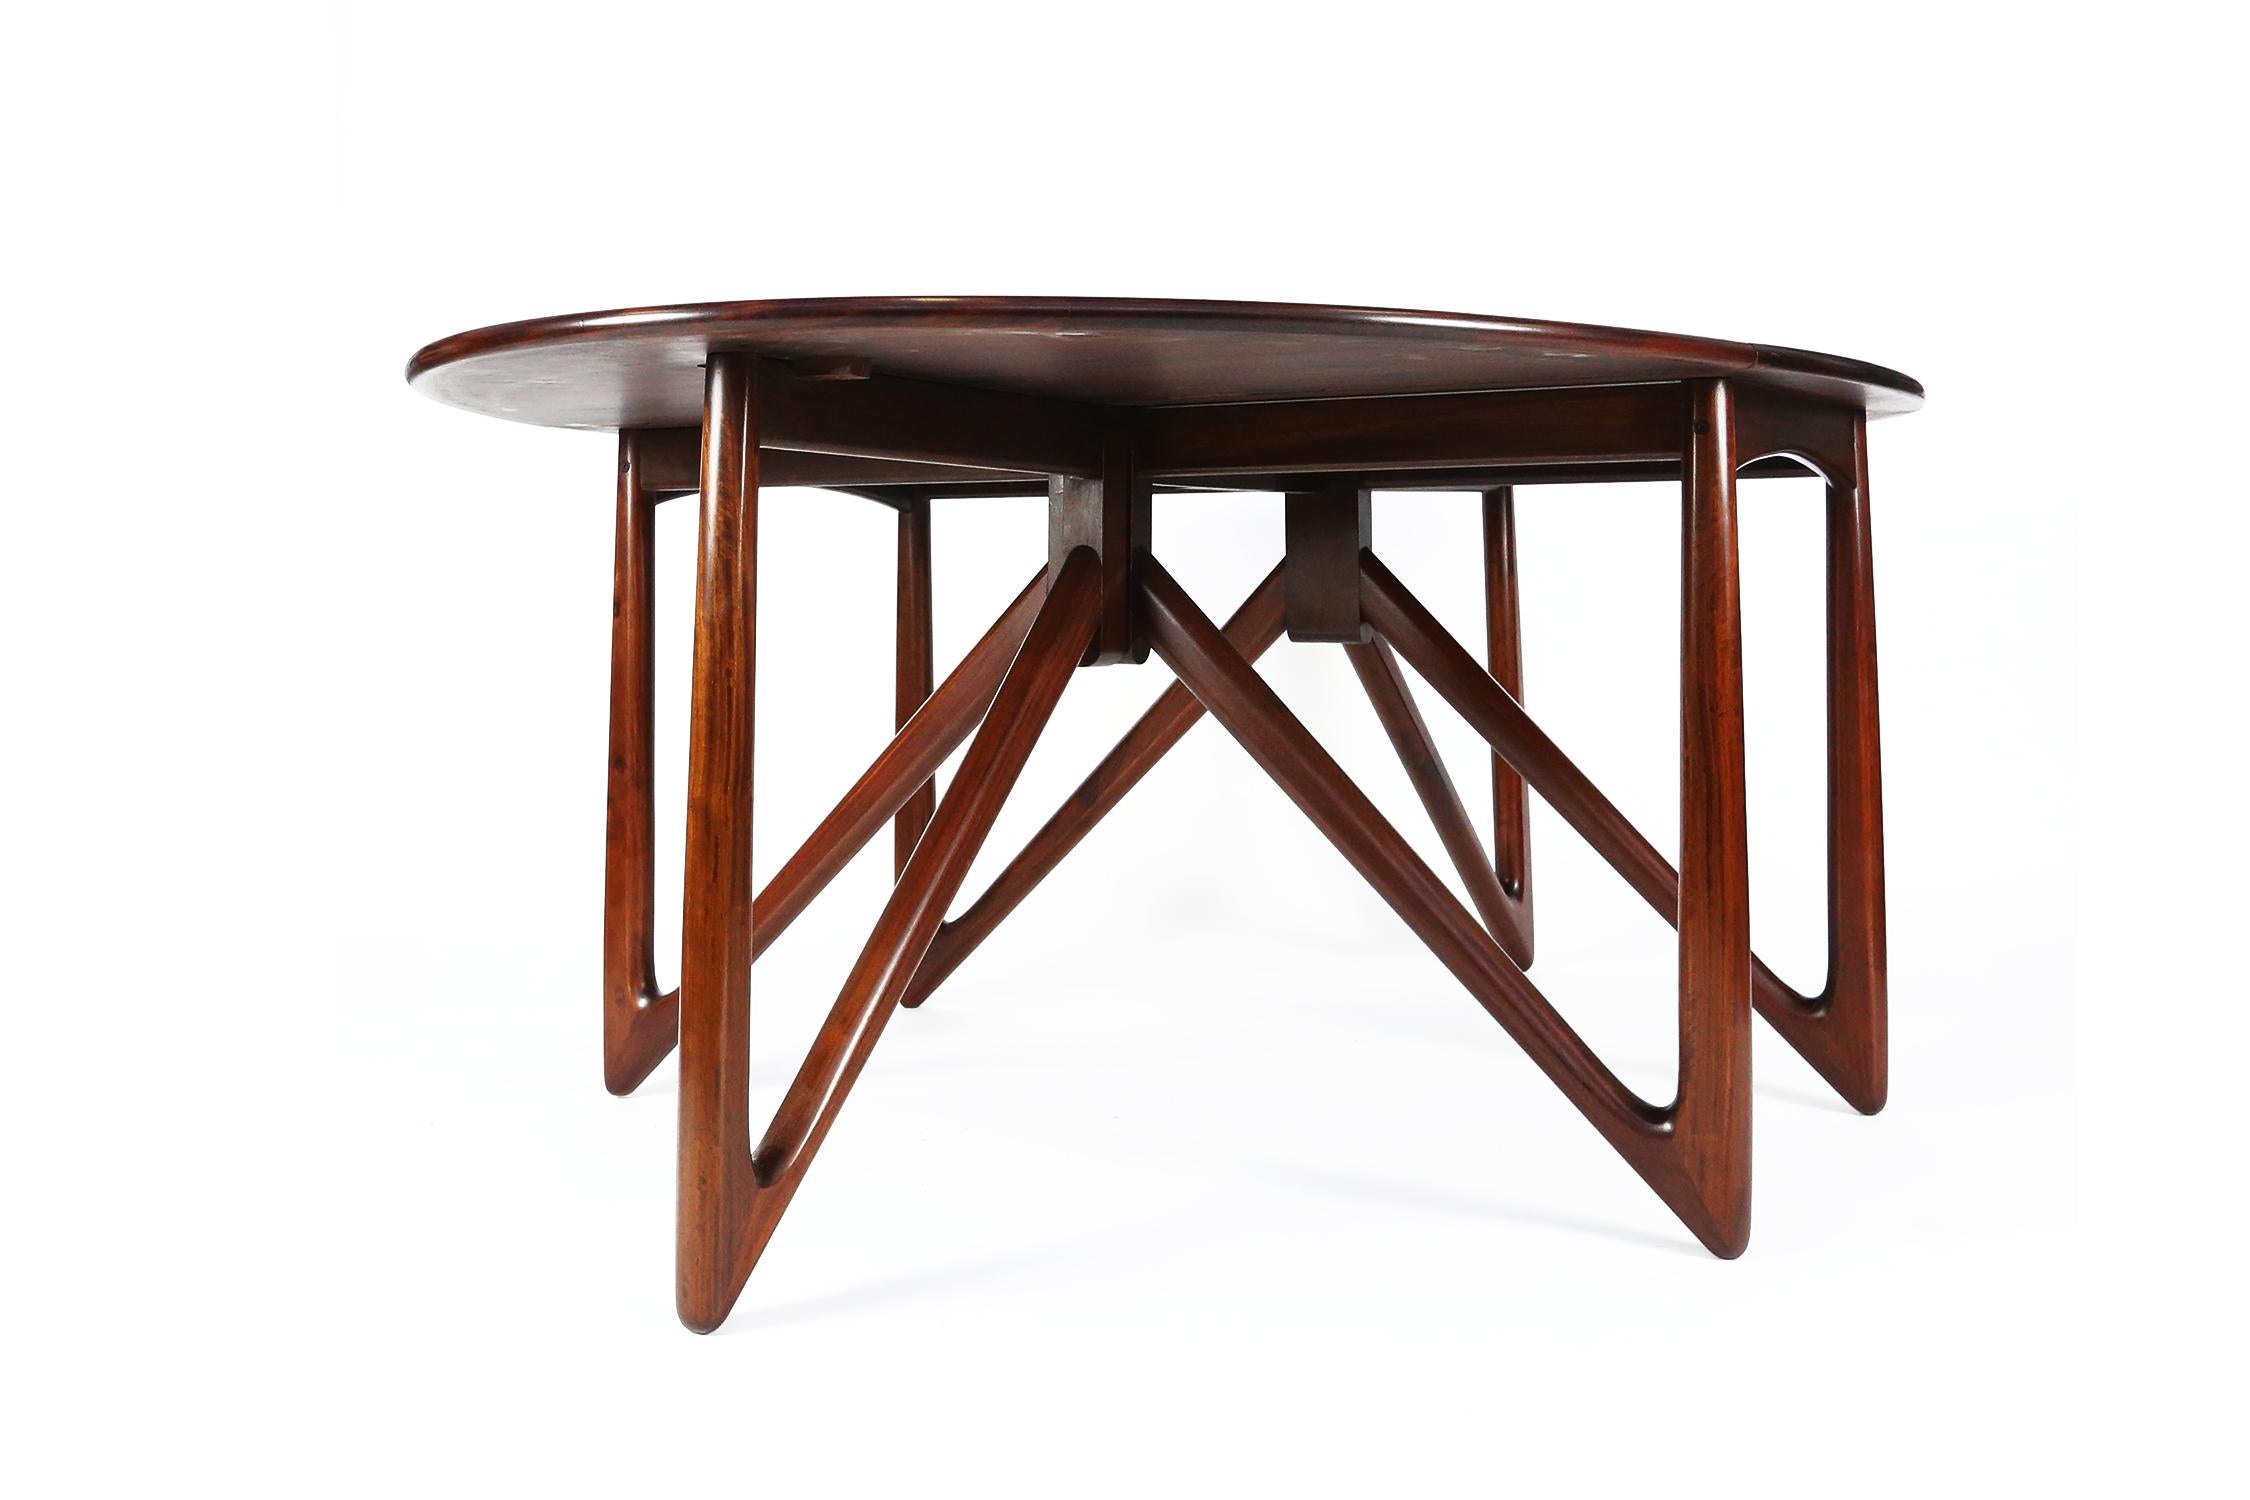 Kurt Østervig Rosewood Drop Leaf Dining Table for Jason Møbler, 1960s For Sale 2